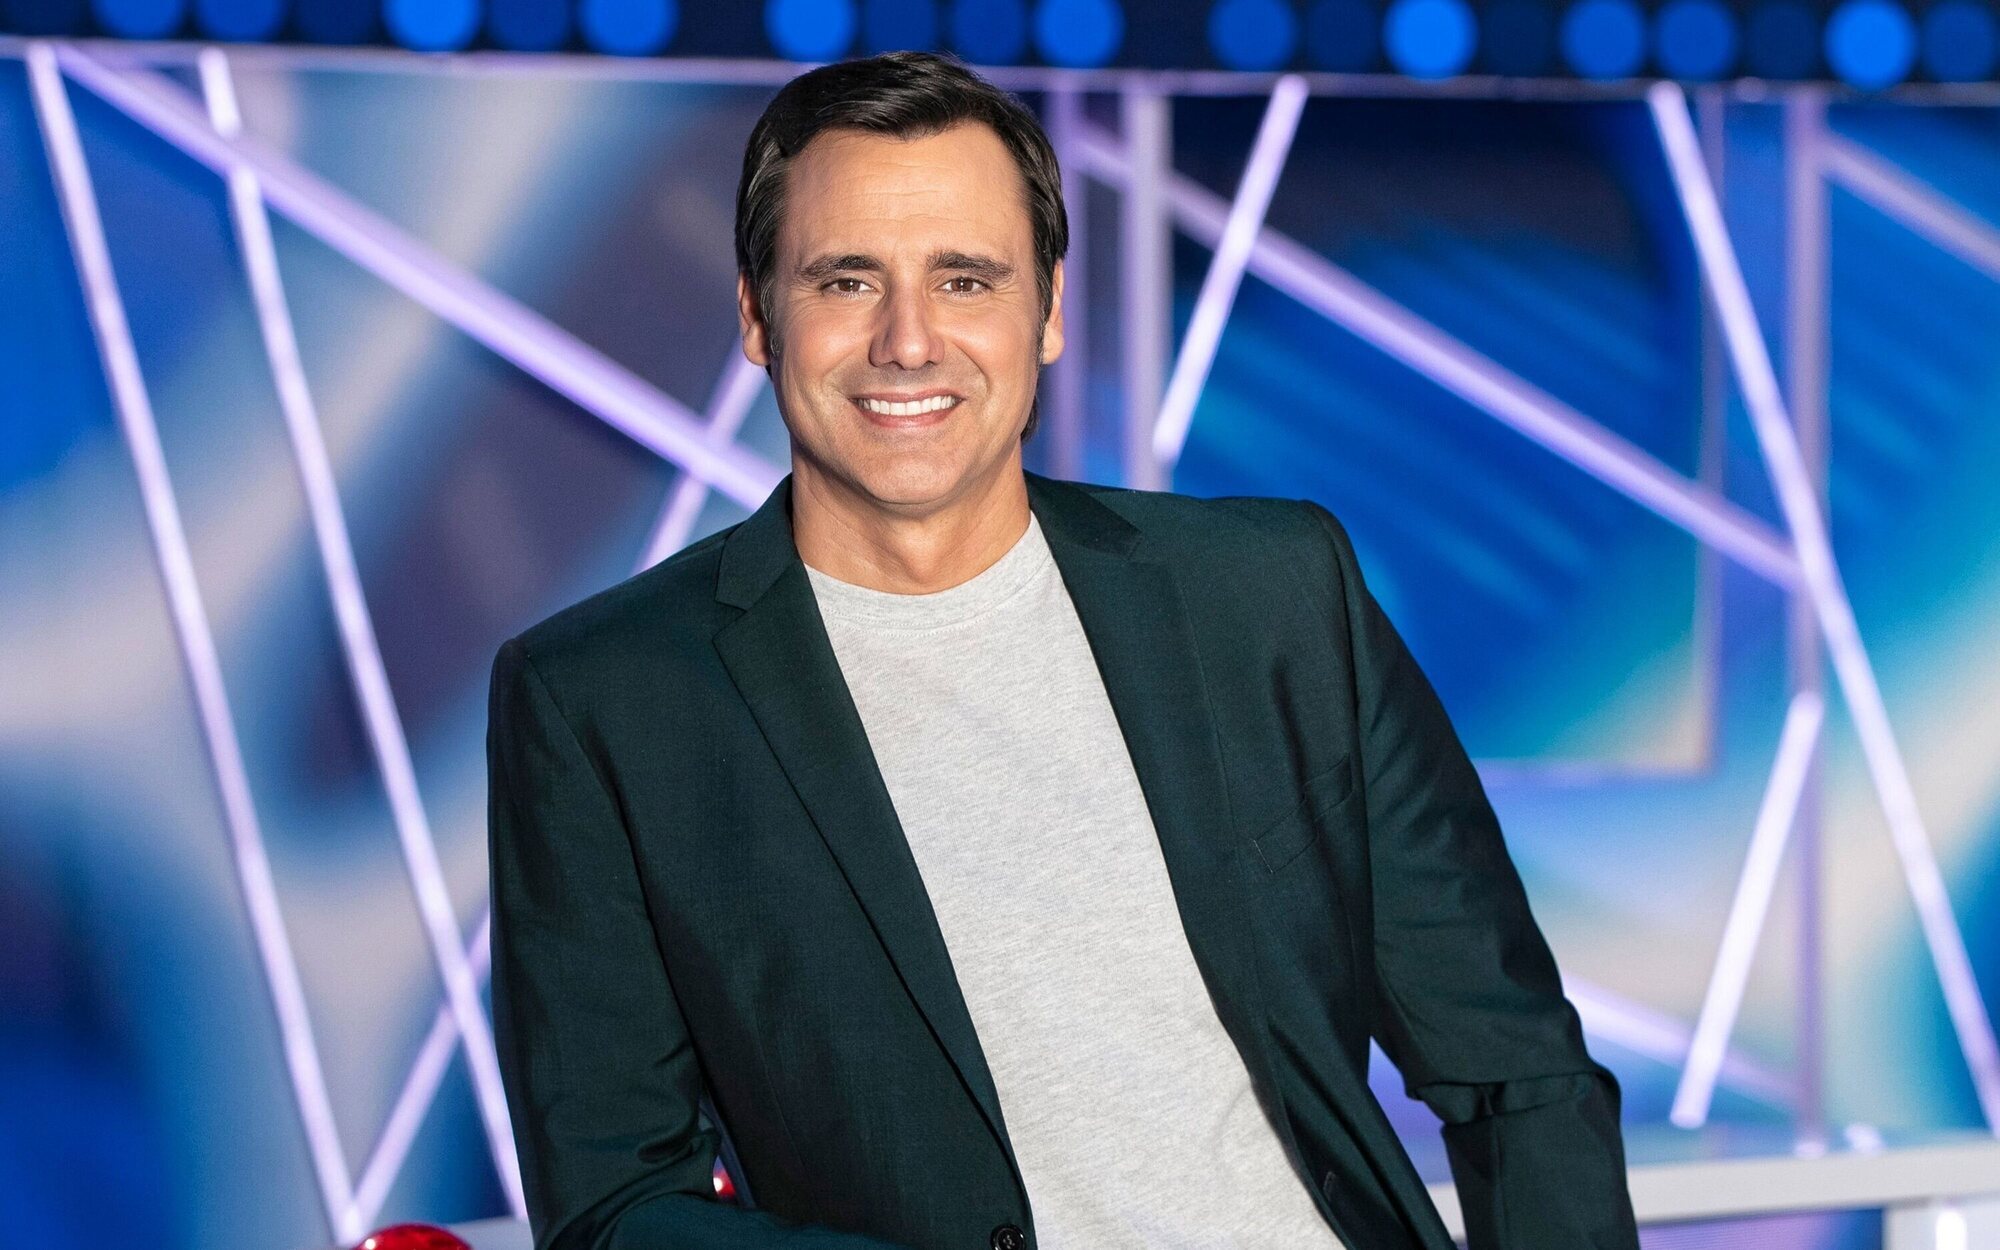 Ion Aramendi presentará la nueva edición de 'Factor X' en Telecinco